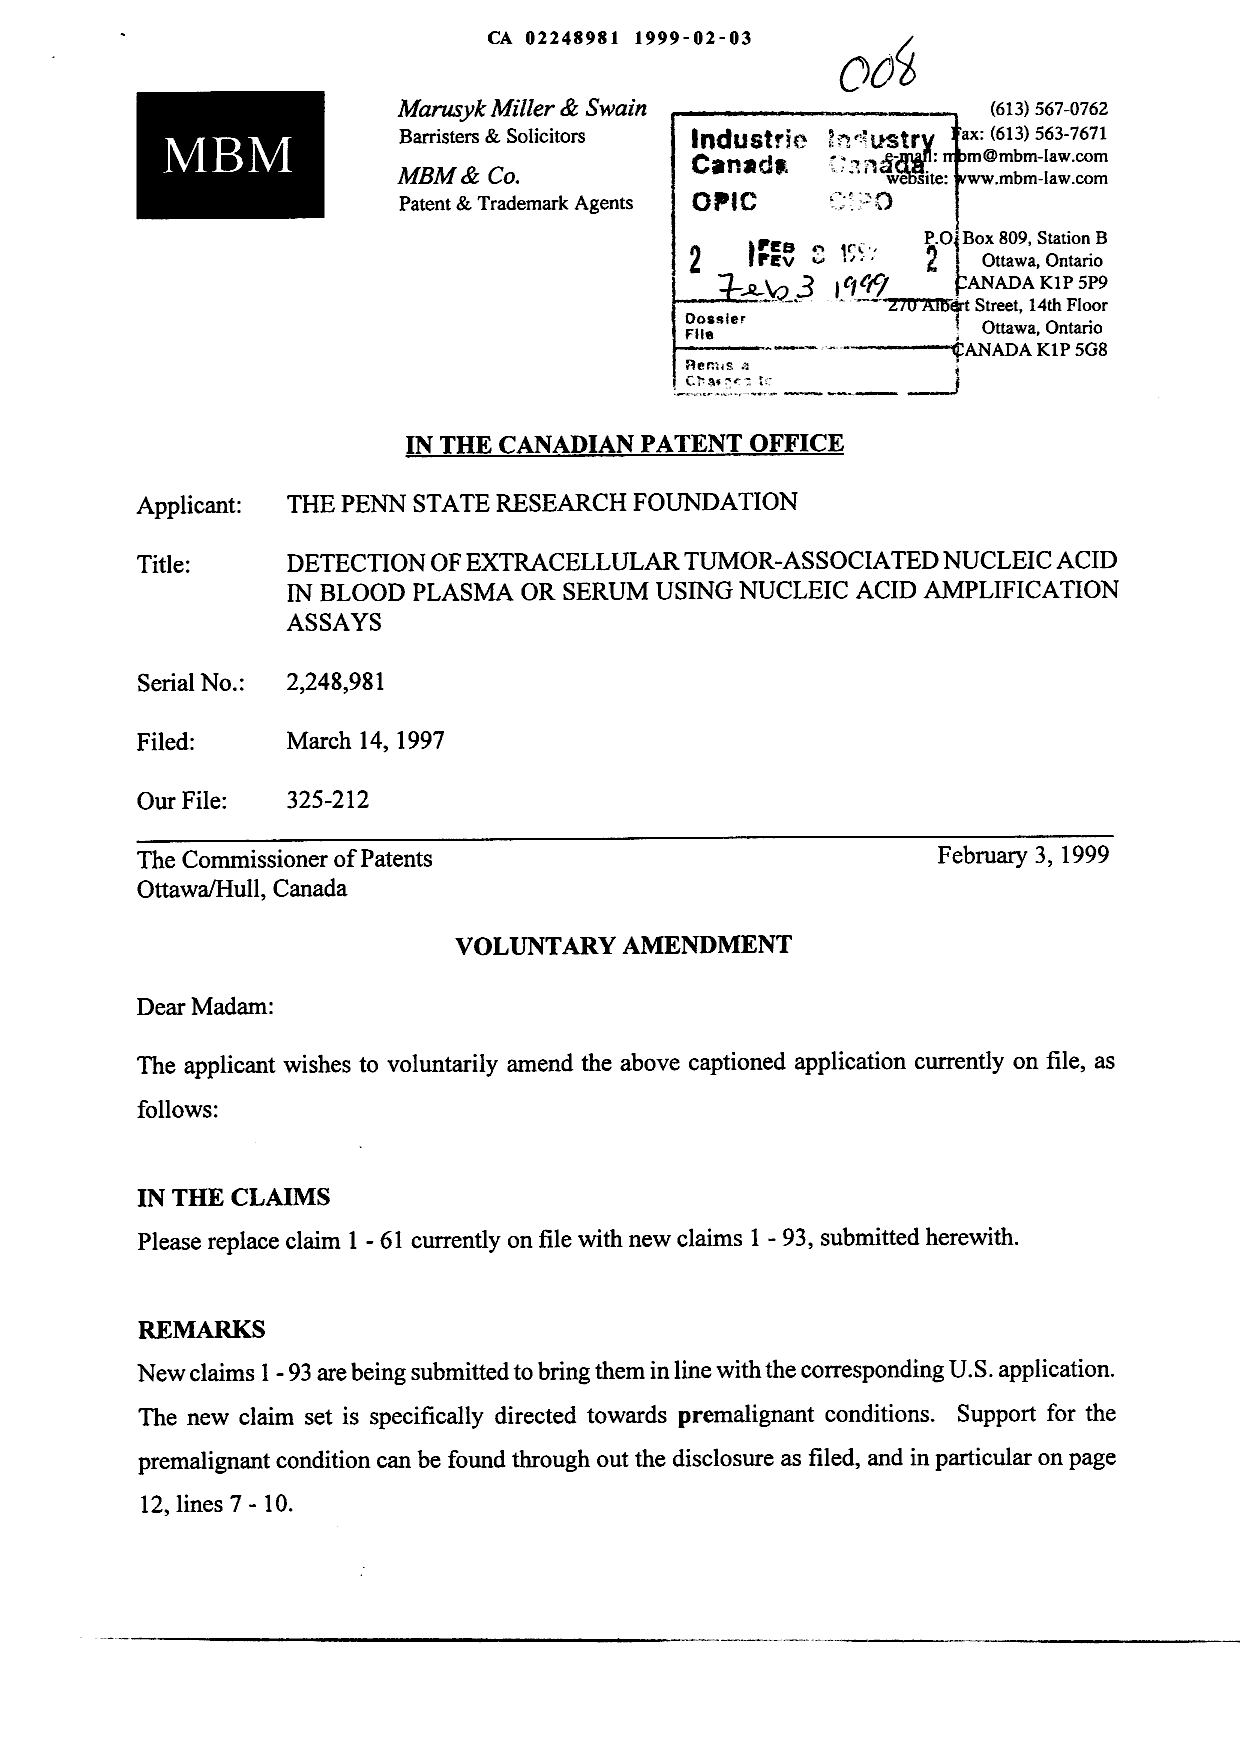 Document de brevet canadien 2248981. Poursuite-Amendment 19990203. Image 1 de 20